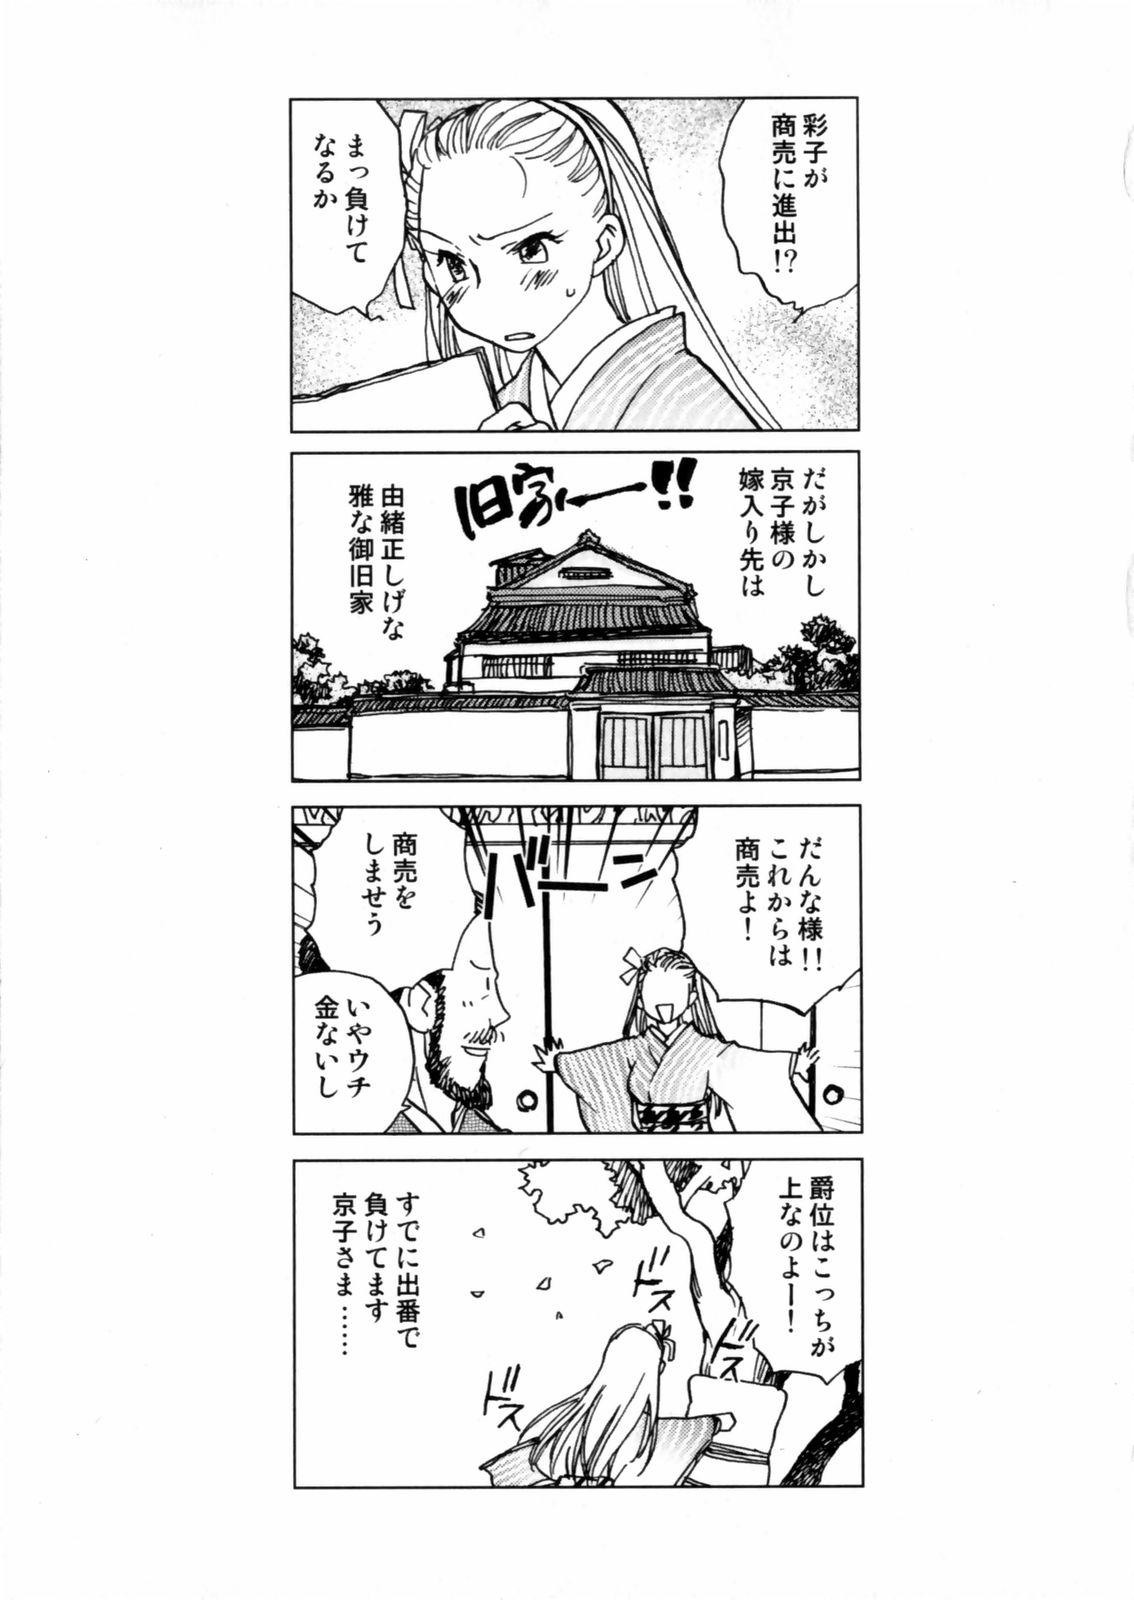 [Okano Ahiru] Hanasake ! Otome Juku (Otome Private Tutoring School) Vol.2 62